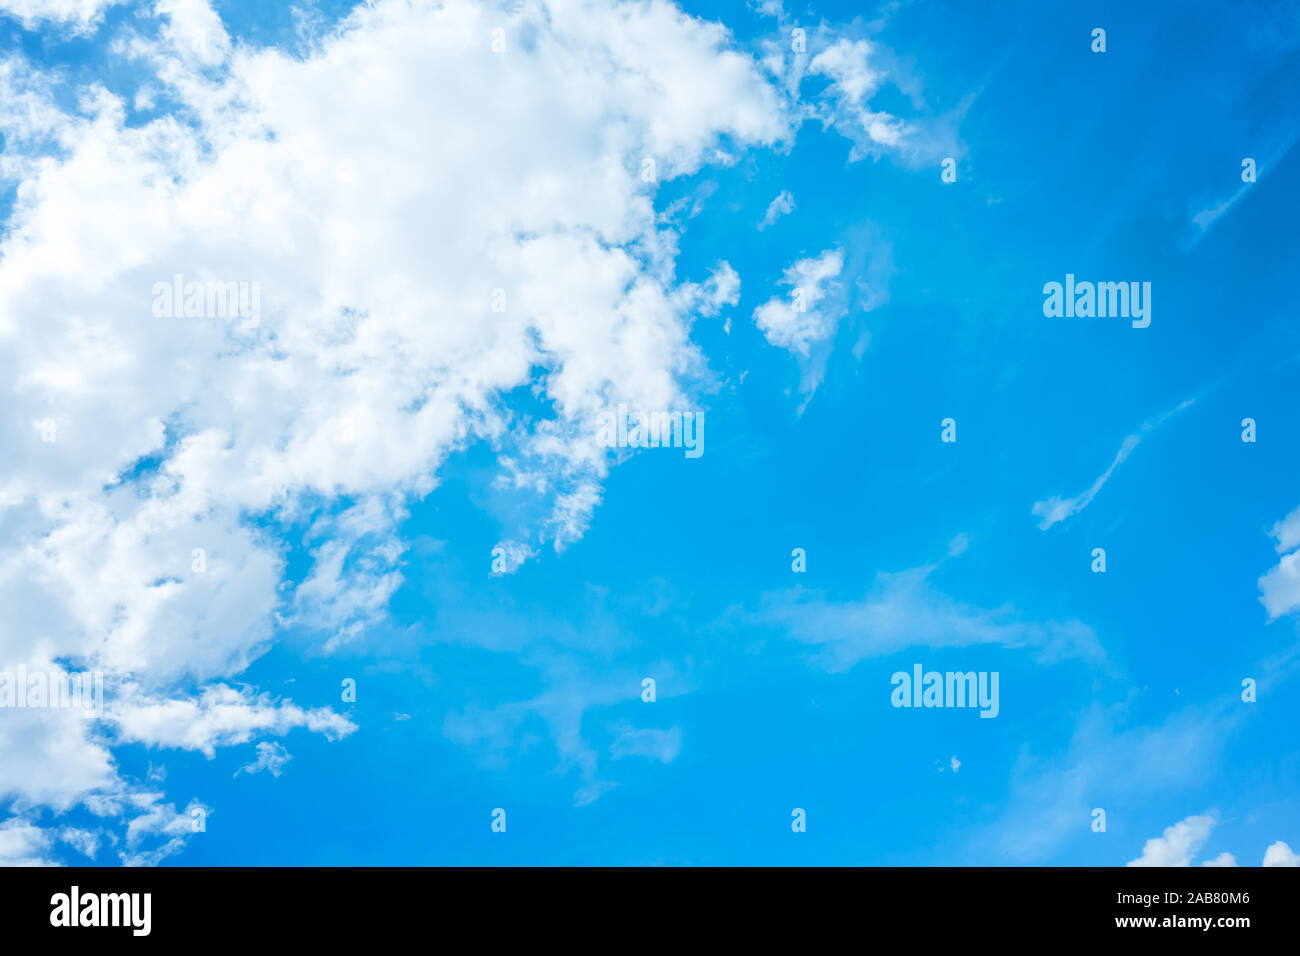 Ein blauer Himmel mit weissen Wolken Stock Photo